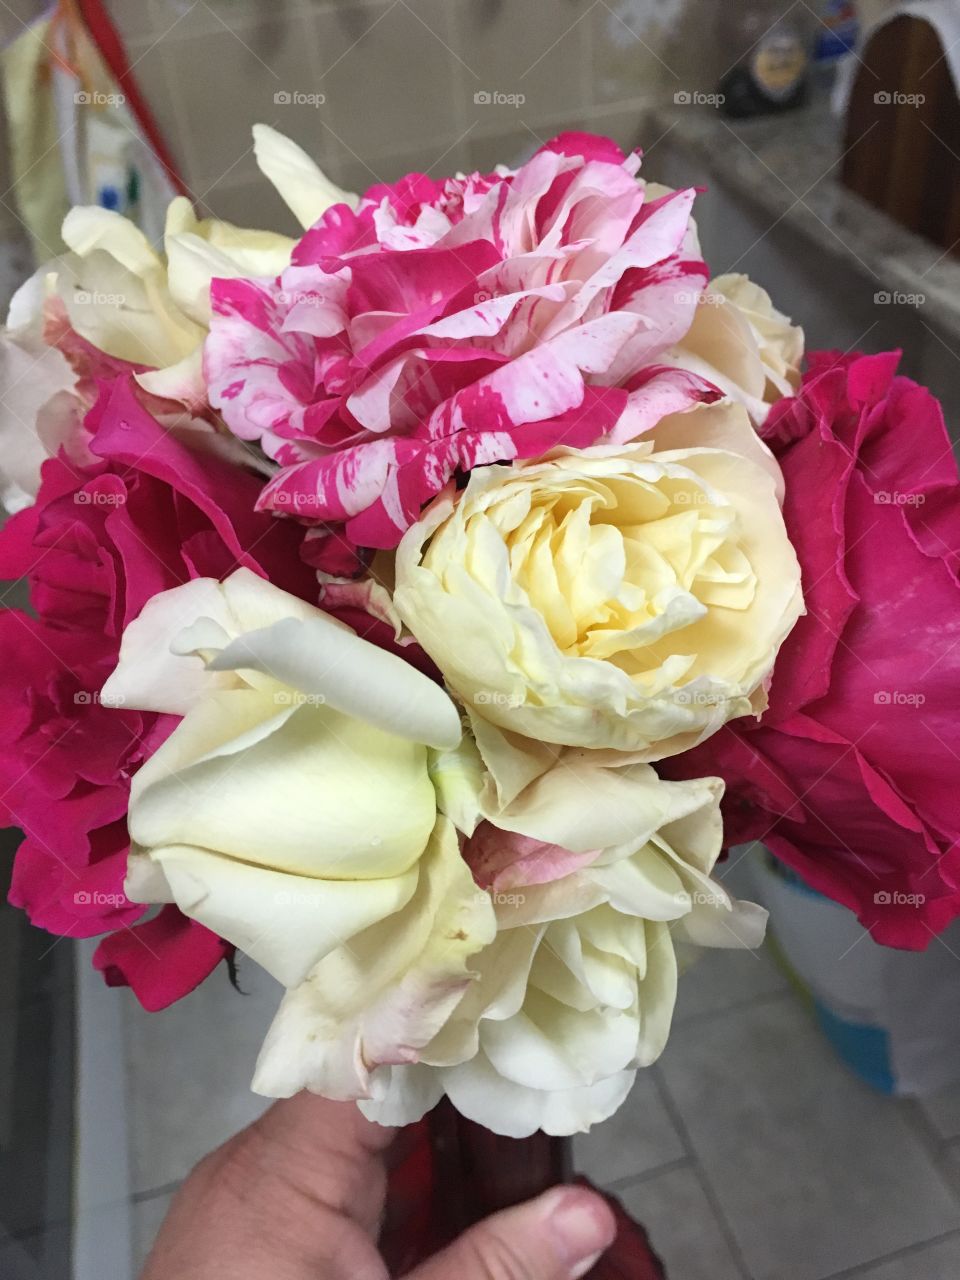 Um maravilhoso buquet de flores colhidas no jardim para presentear a esposa querida. Agrados sempre fazem bem...